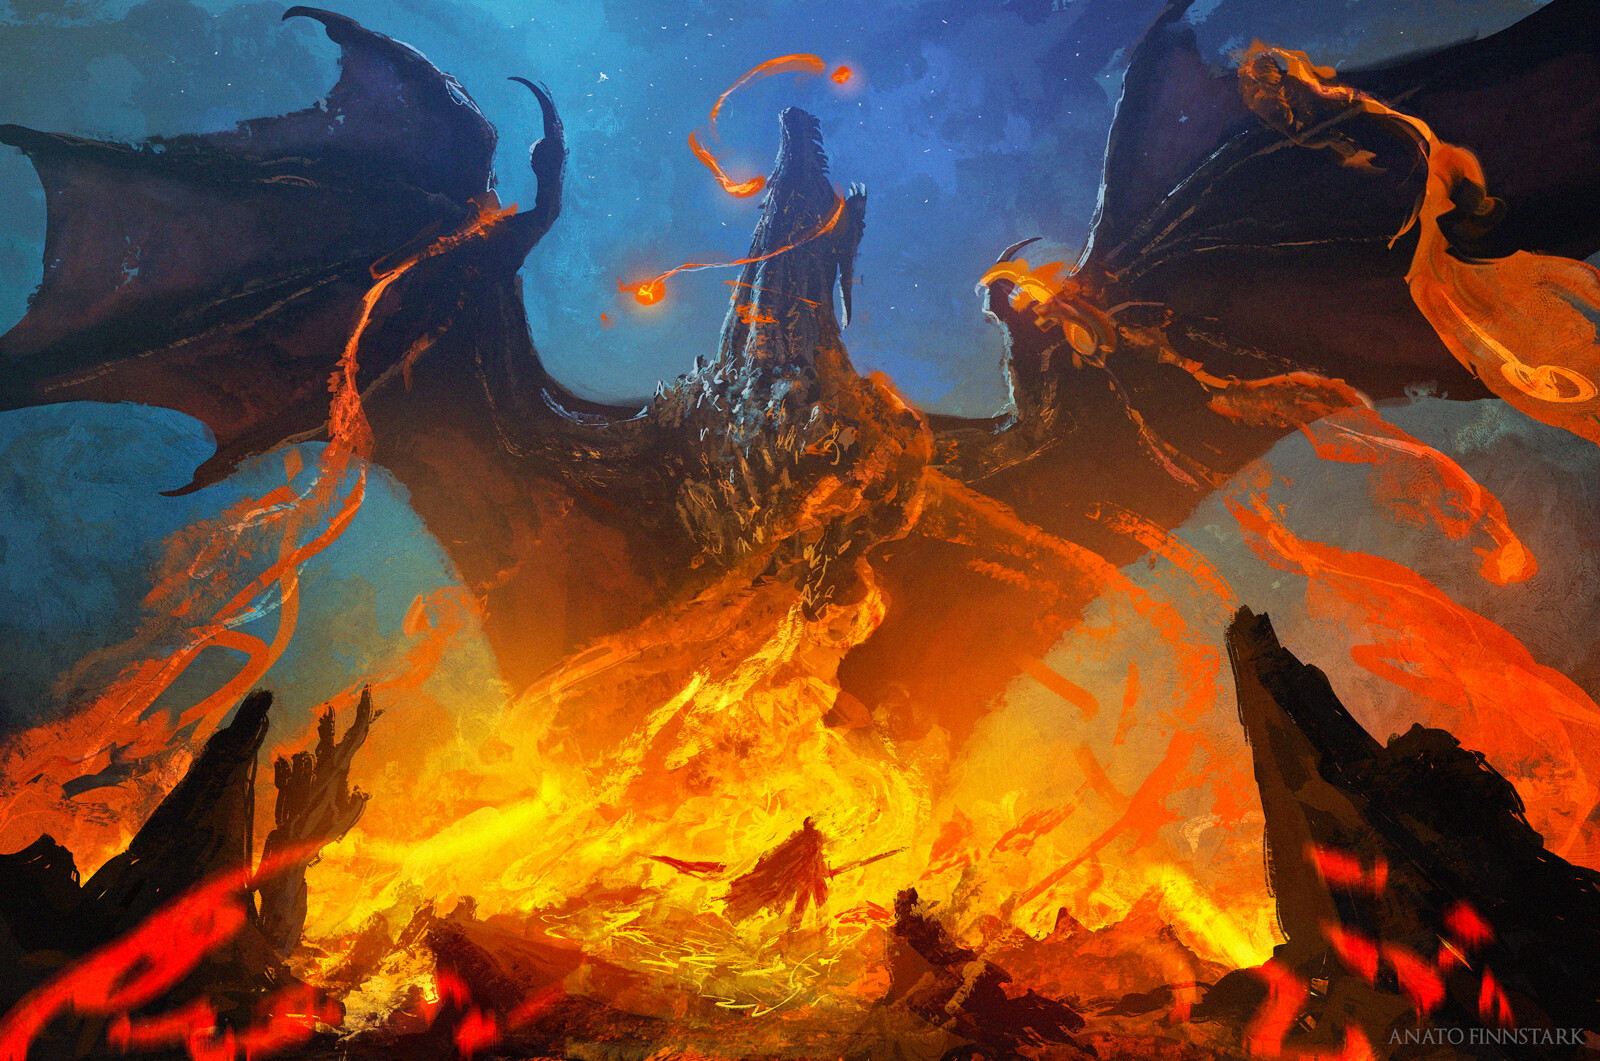 Artwork Digital Art Fantasy Art Dragon Fire Anato Finnstark 1600x1061